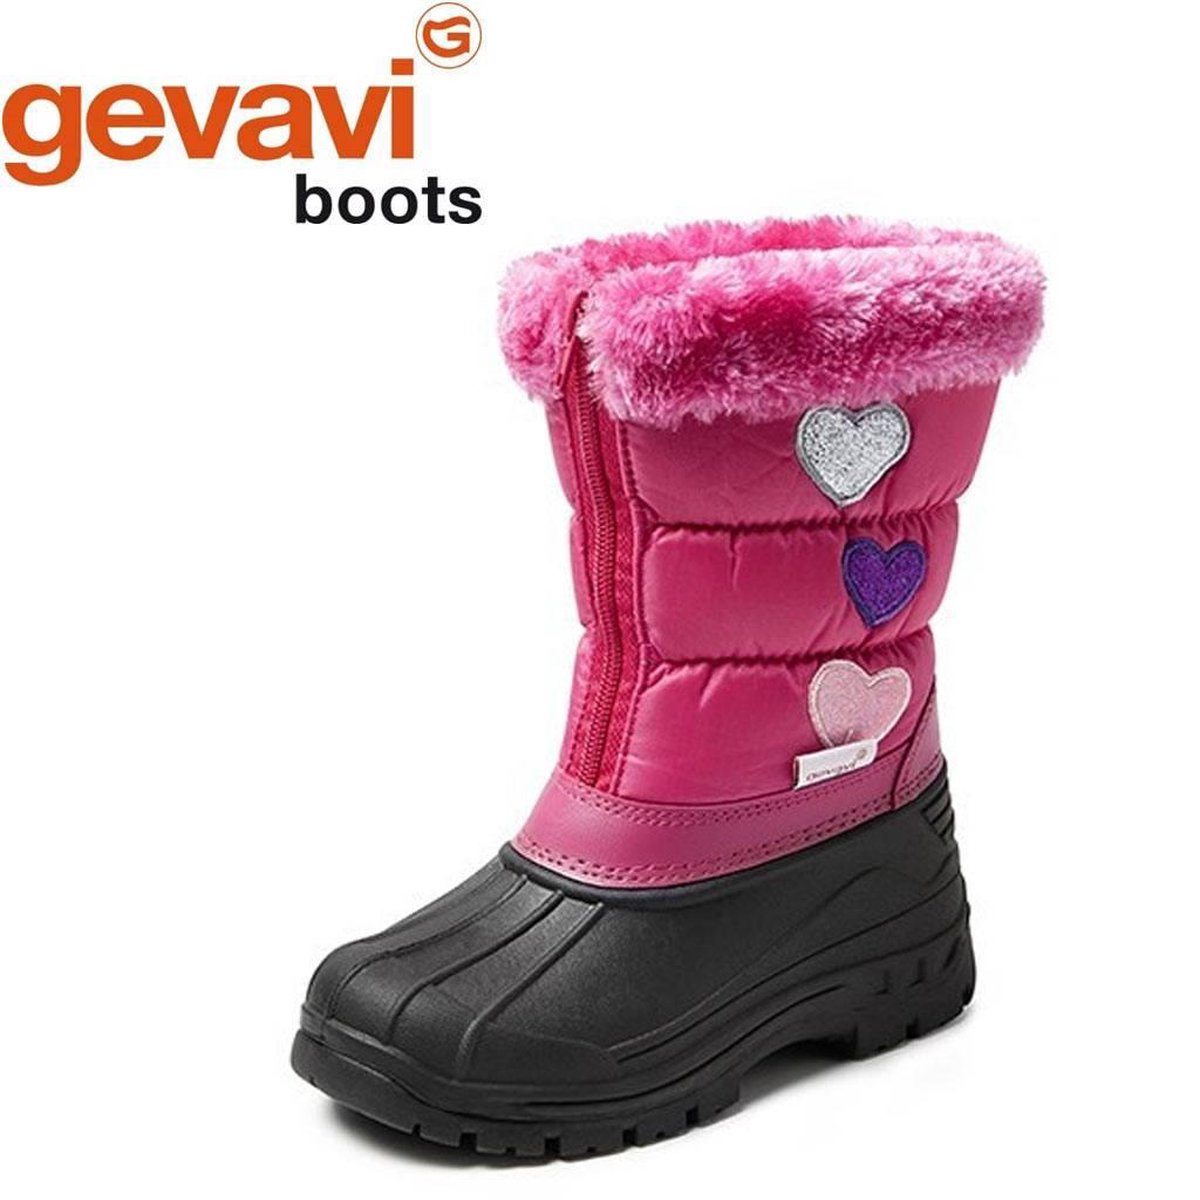 Gevavi Boots - CW94 gevoerde winterlaars roze | bol.com